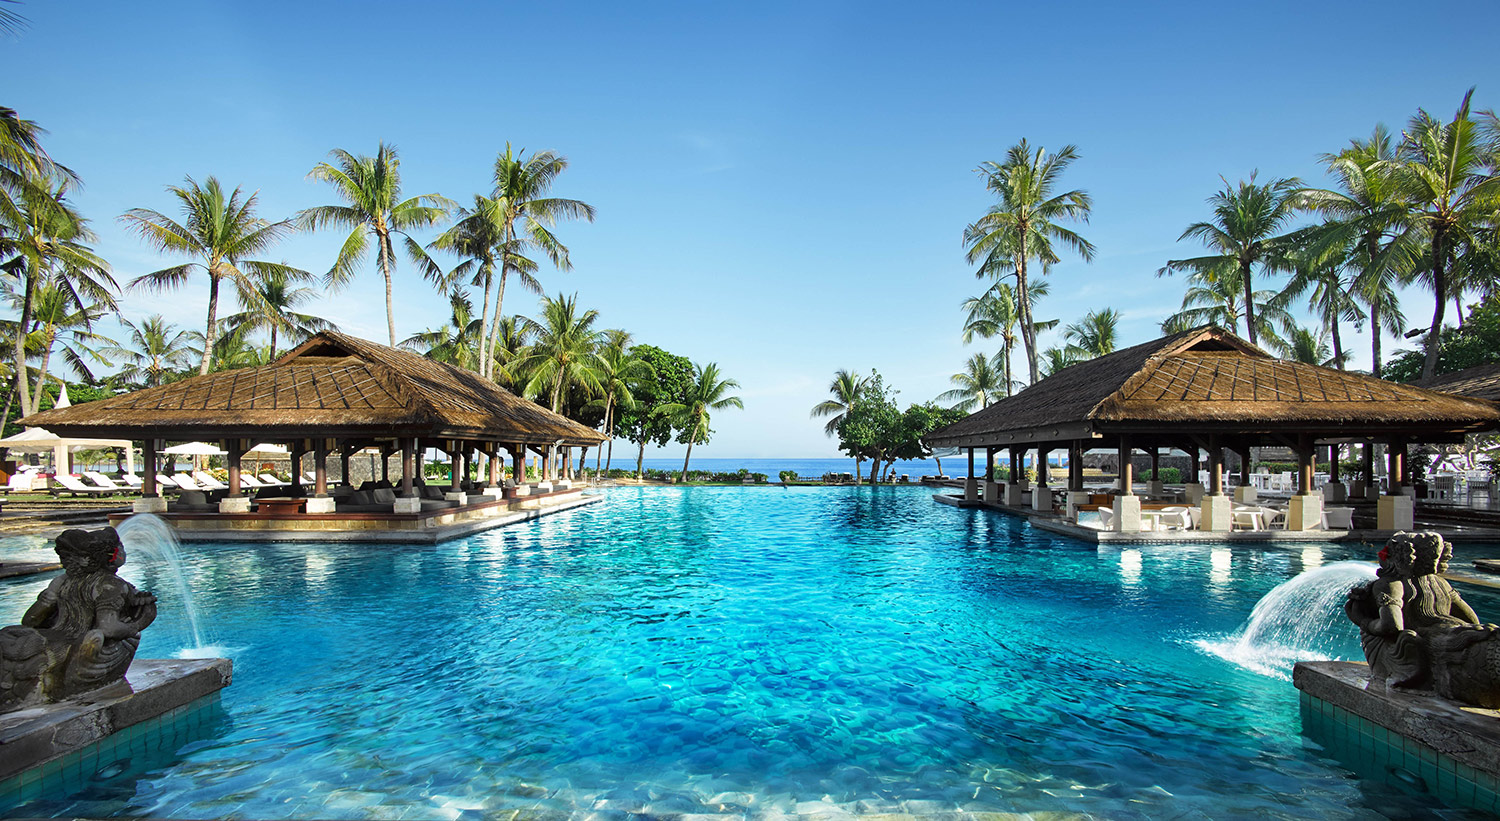 InterContinental Bali Resort: Kemewahan Resor Jimbaran